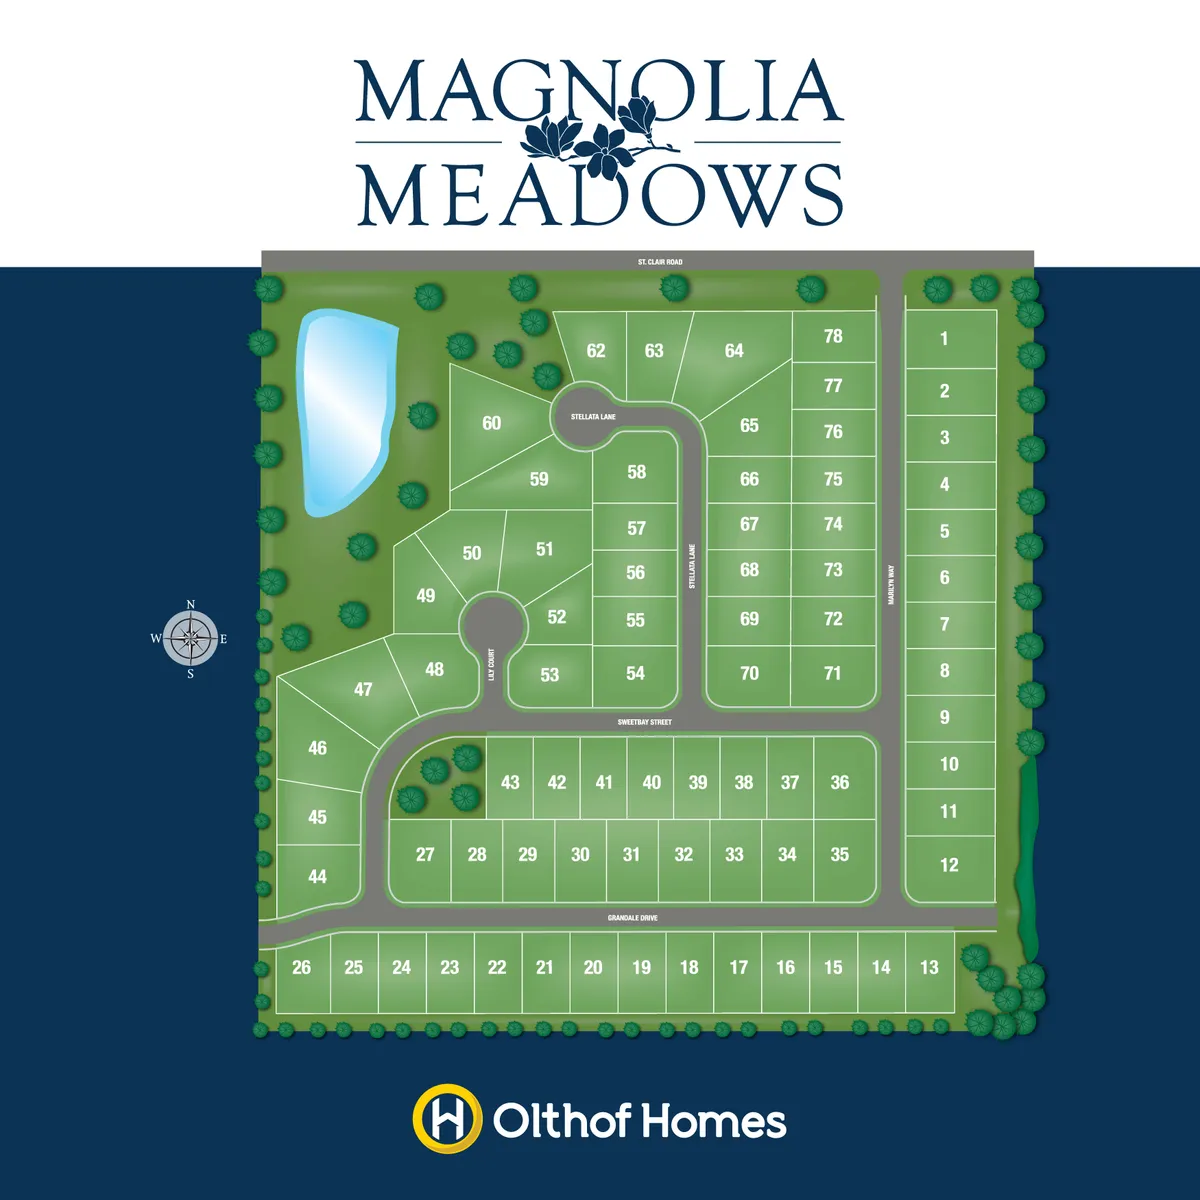 Magnolia Meadows